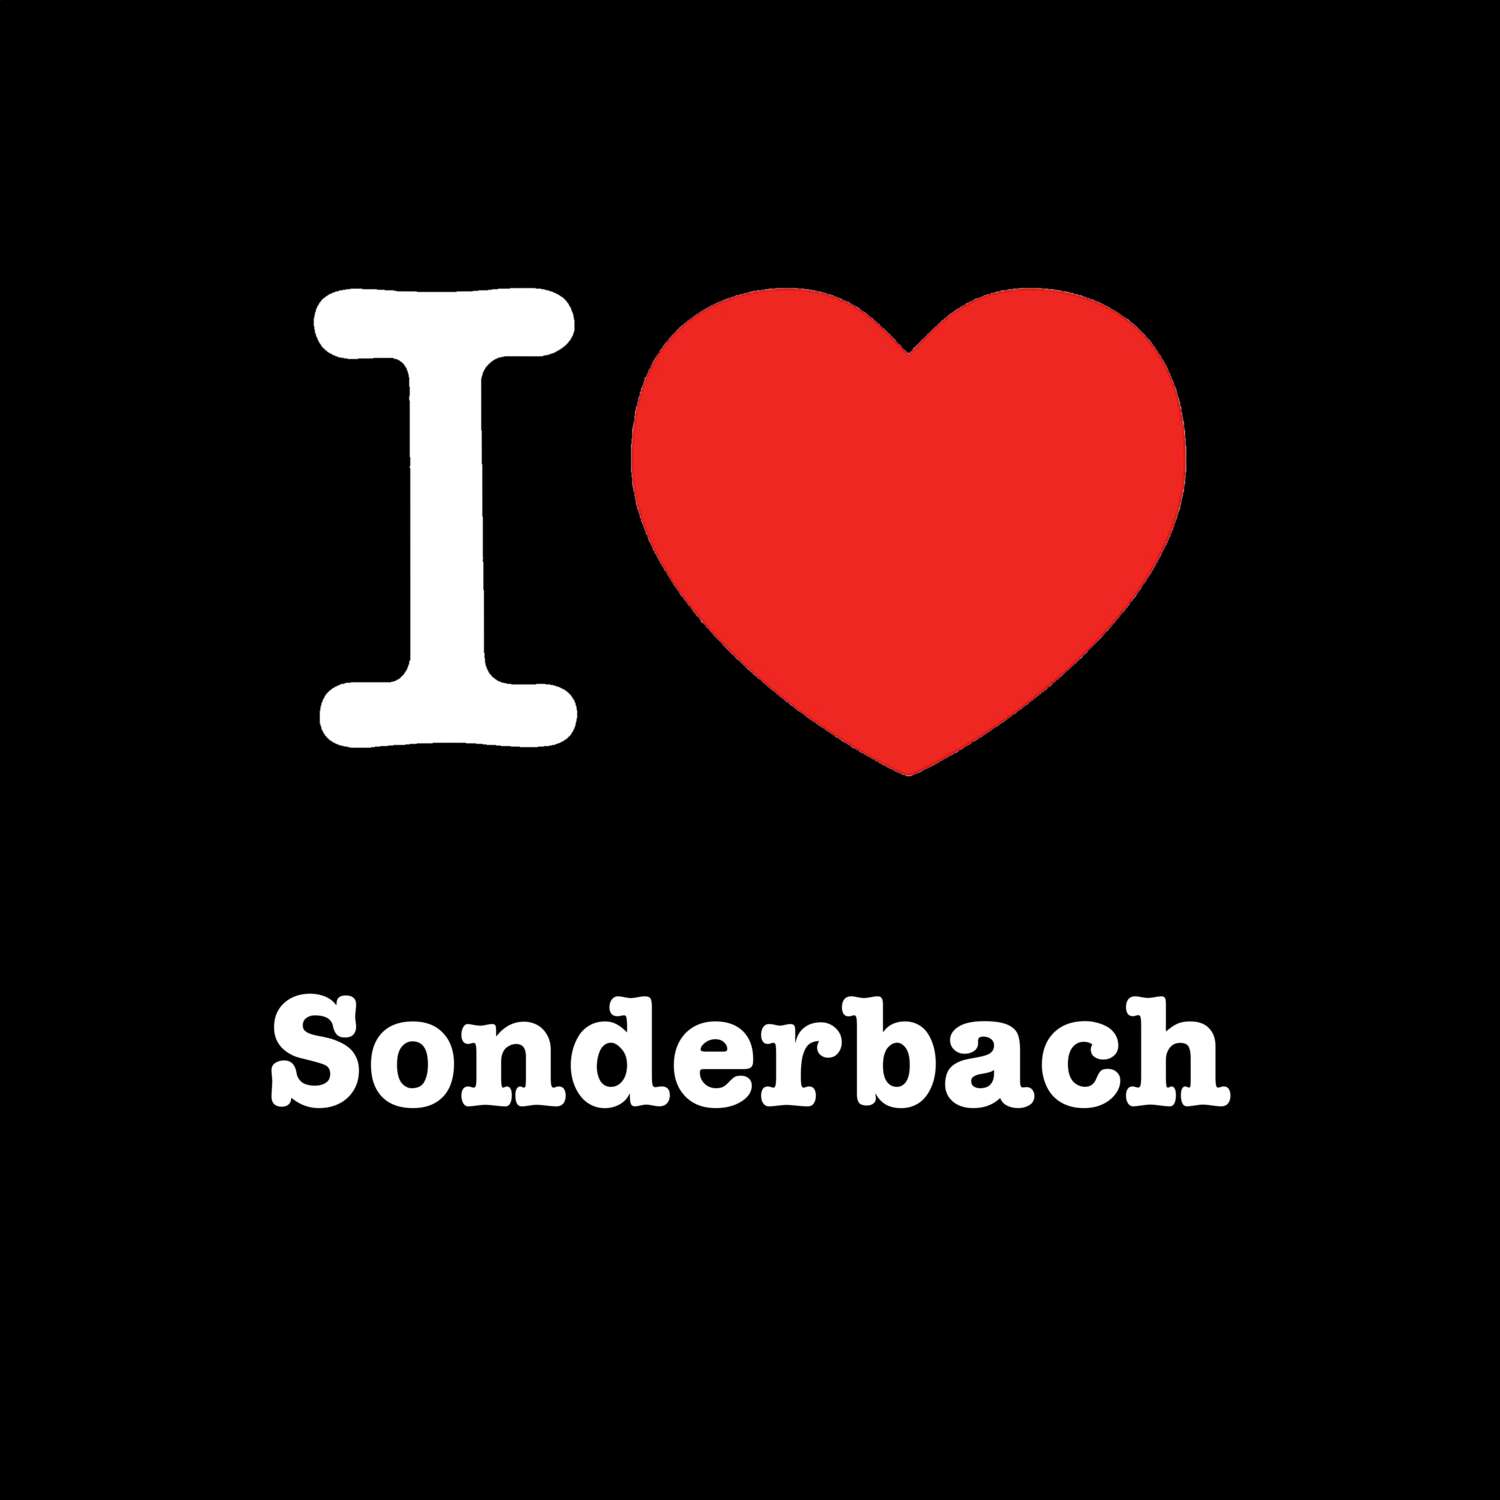 Sonderbach T-Shirt »I love«